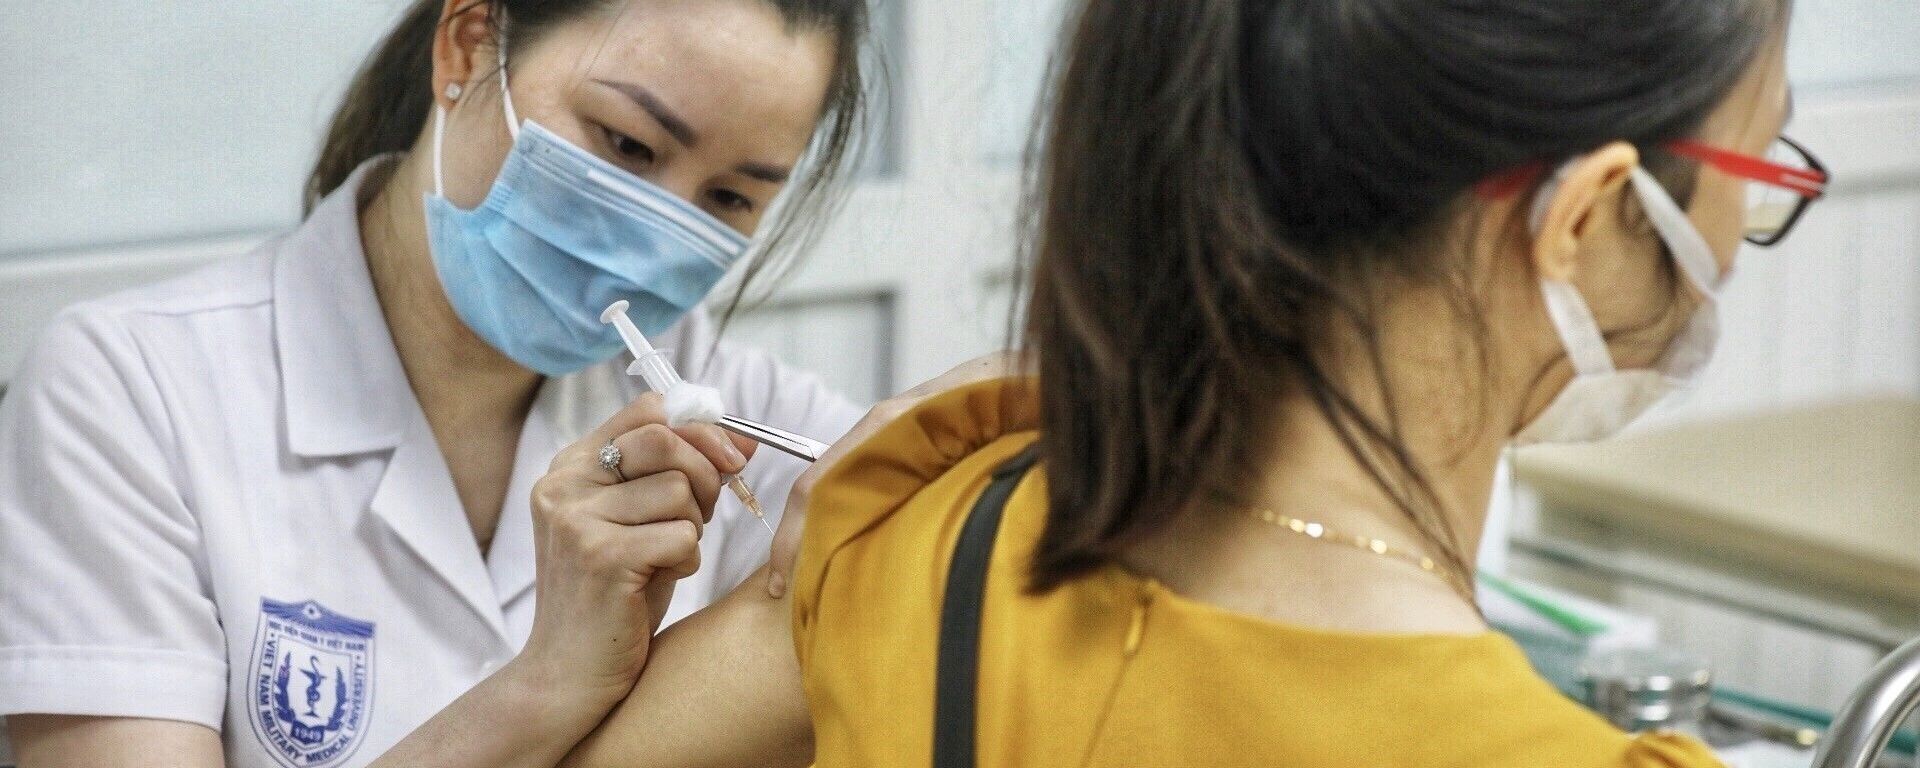 Nhân viên y tế tiêm thử nghiệm vaccine Nano Covax phòng COVID-19 giai đoạn 3. - Sputnik Việt Nam, 1920, 01.09.2021